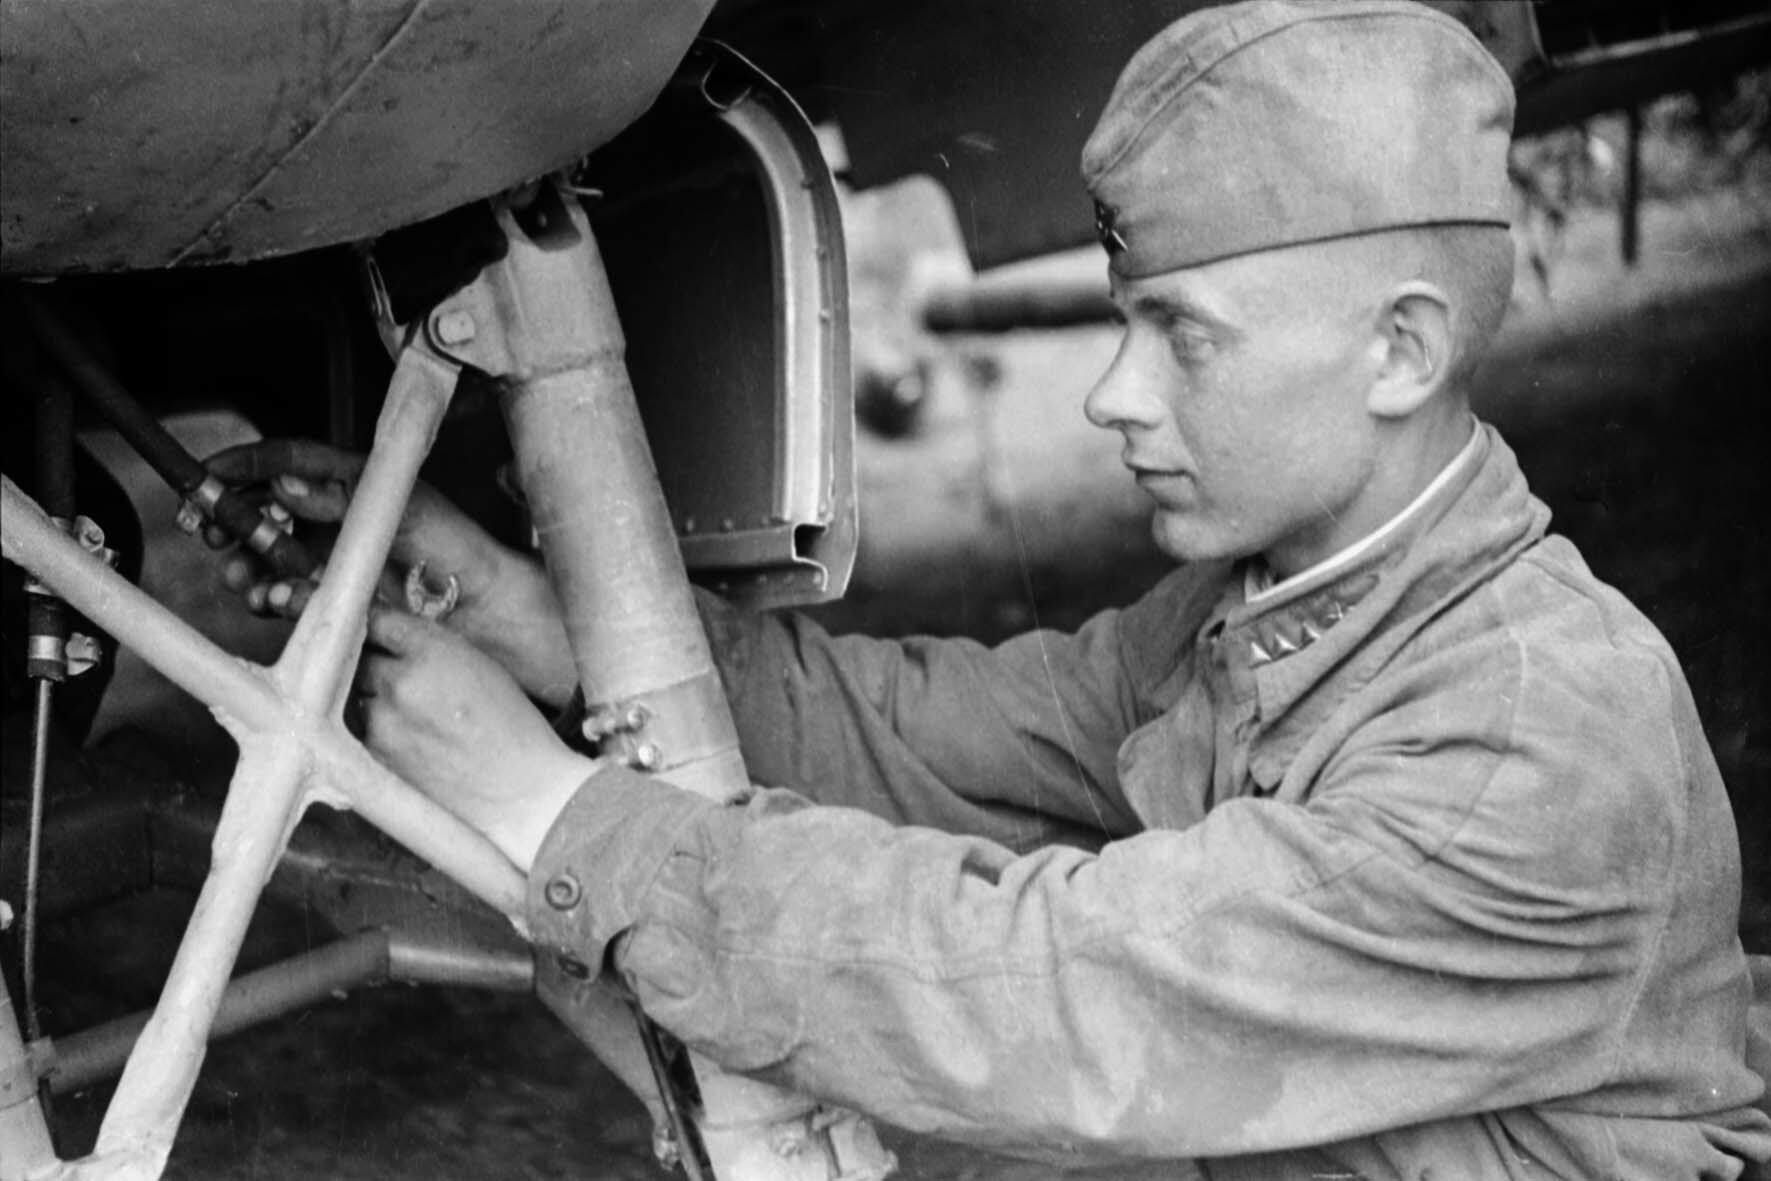 Fotografie: Triebwerkmechaniker des 6. Gardeschlachtfliegerregiments, Kalininer Front, 12. Juni 1942 (Museum Berlin-Karlshorst RR-P)